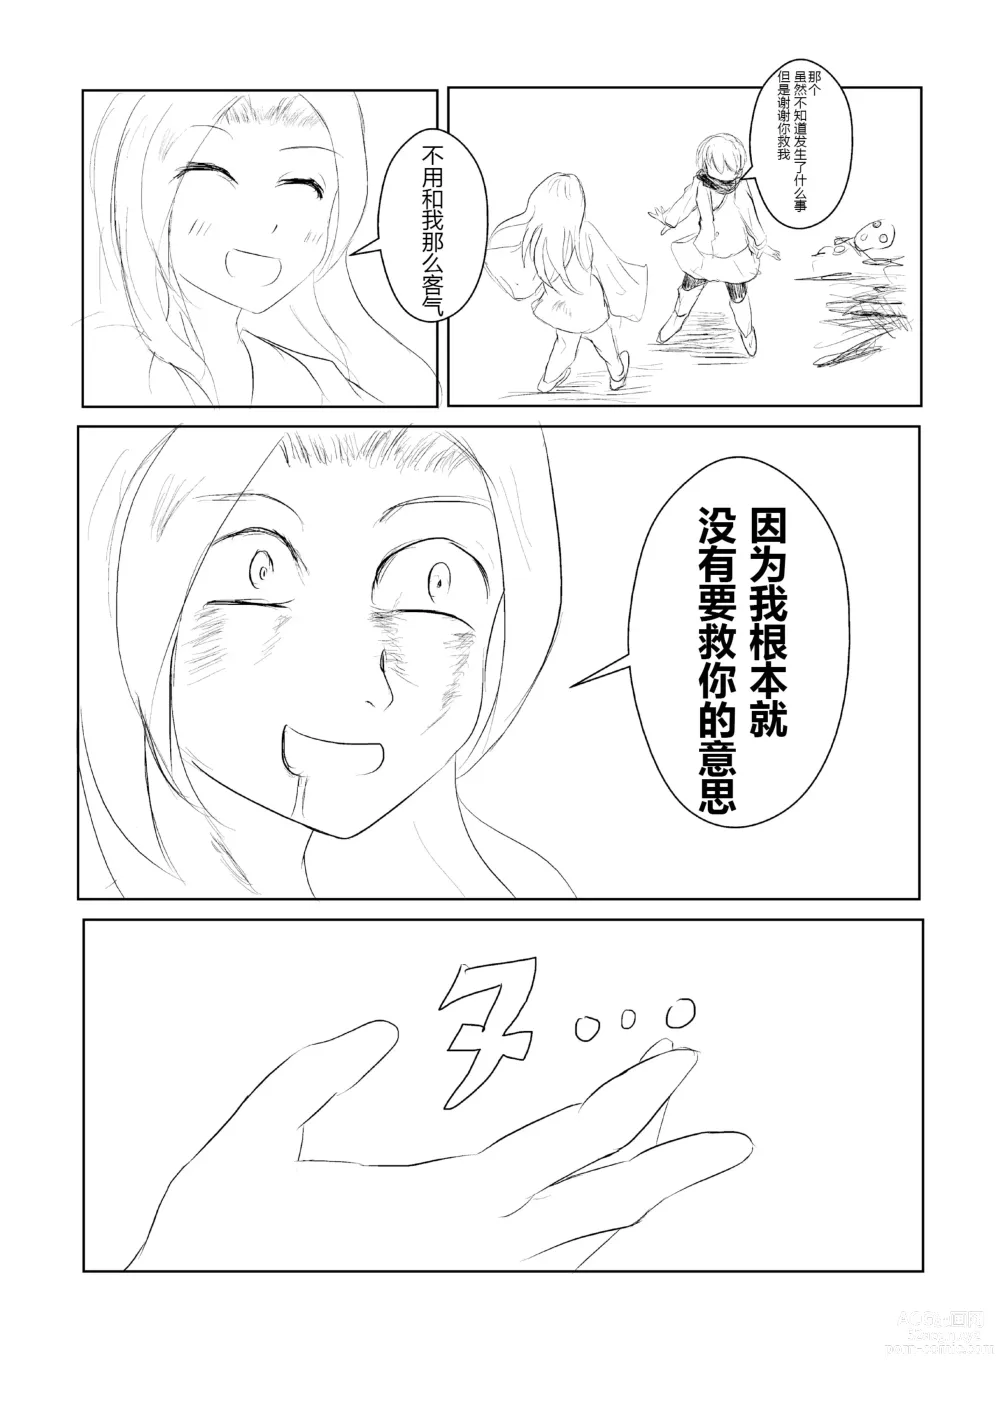 Page 5 of doujinshi hesomazixyo1